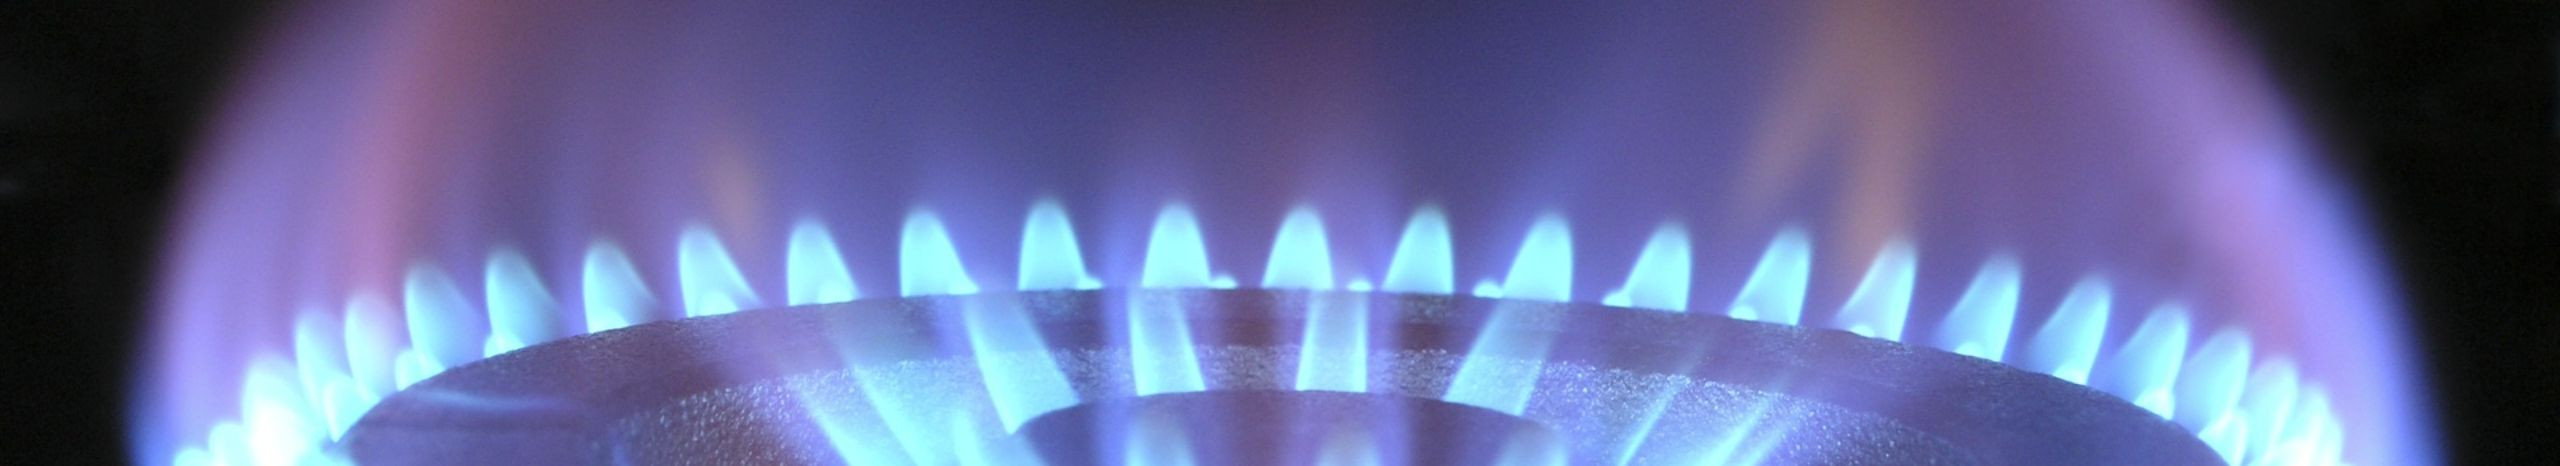 Meie ettevõte on spetsialiseerunud gaasikatelde paigaldamisele ning oleme pühendunud sellele, et meie kliendid saaksid nautida mugavat ja tõhusat küttesüsteemi oma kodus.